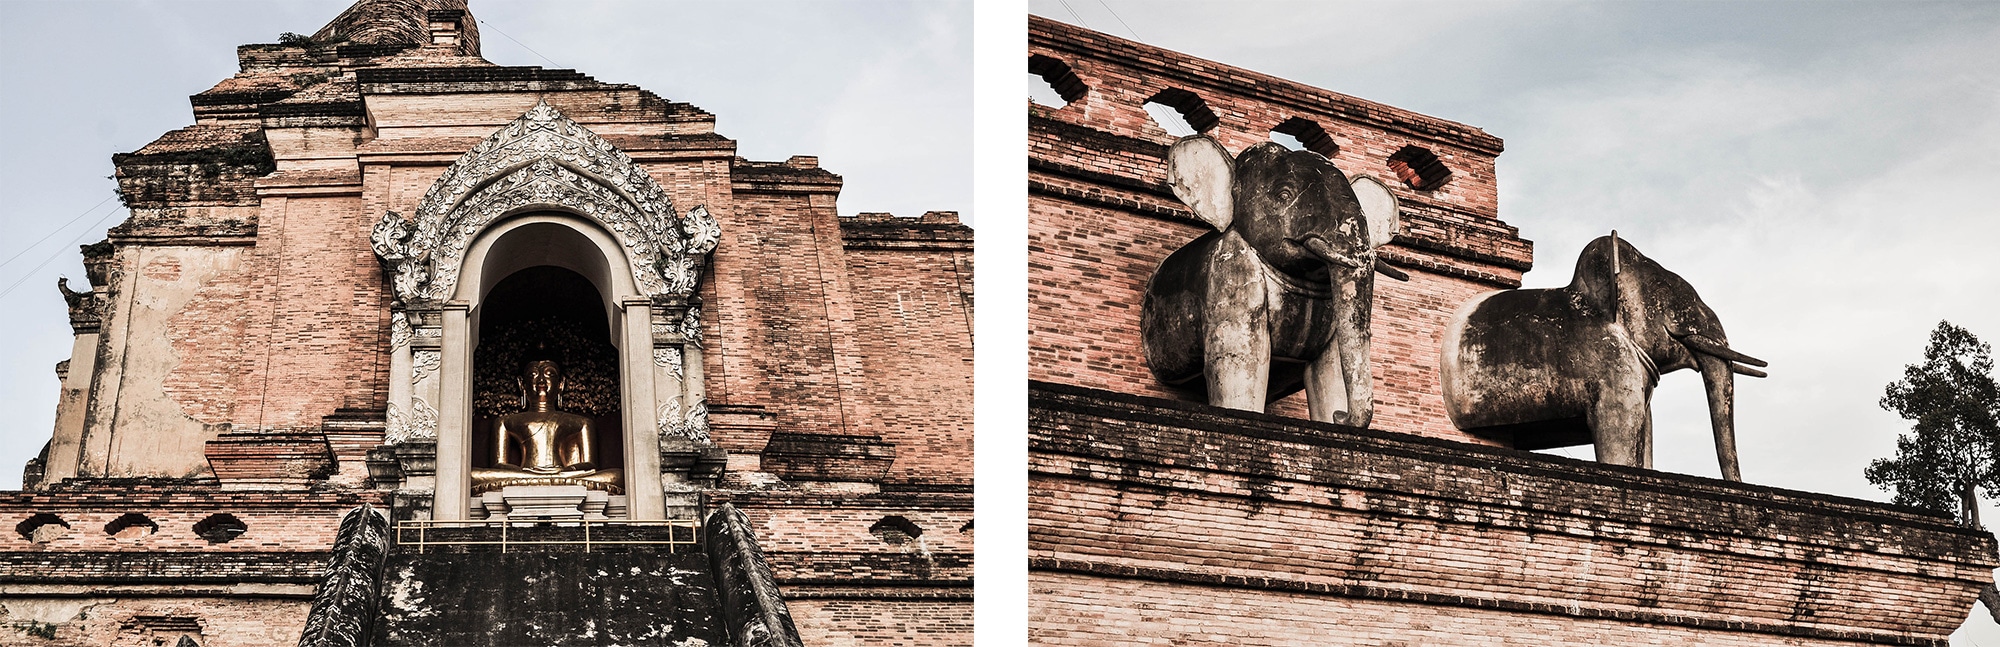 Le Wat Chedi Luang à Chiang Maï en Thaïlande